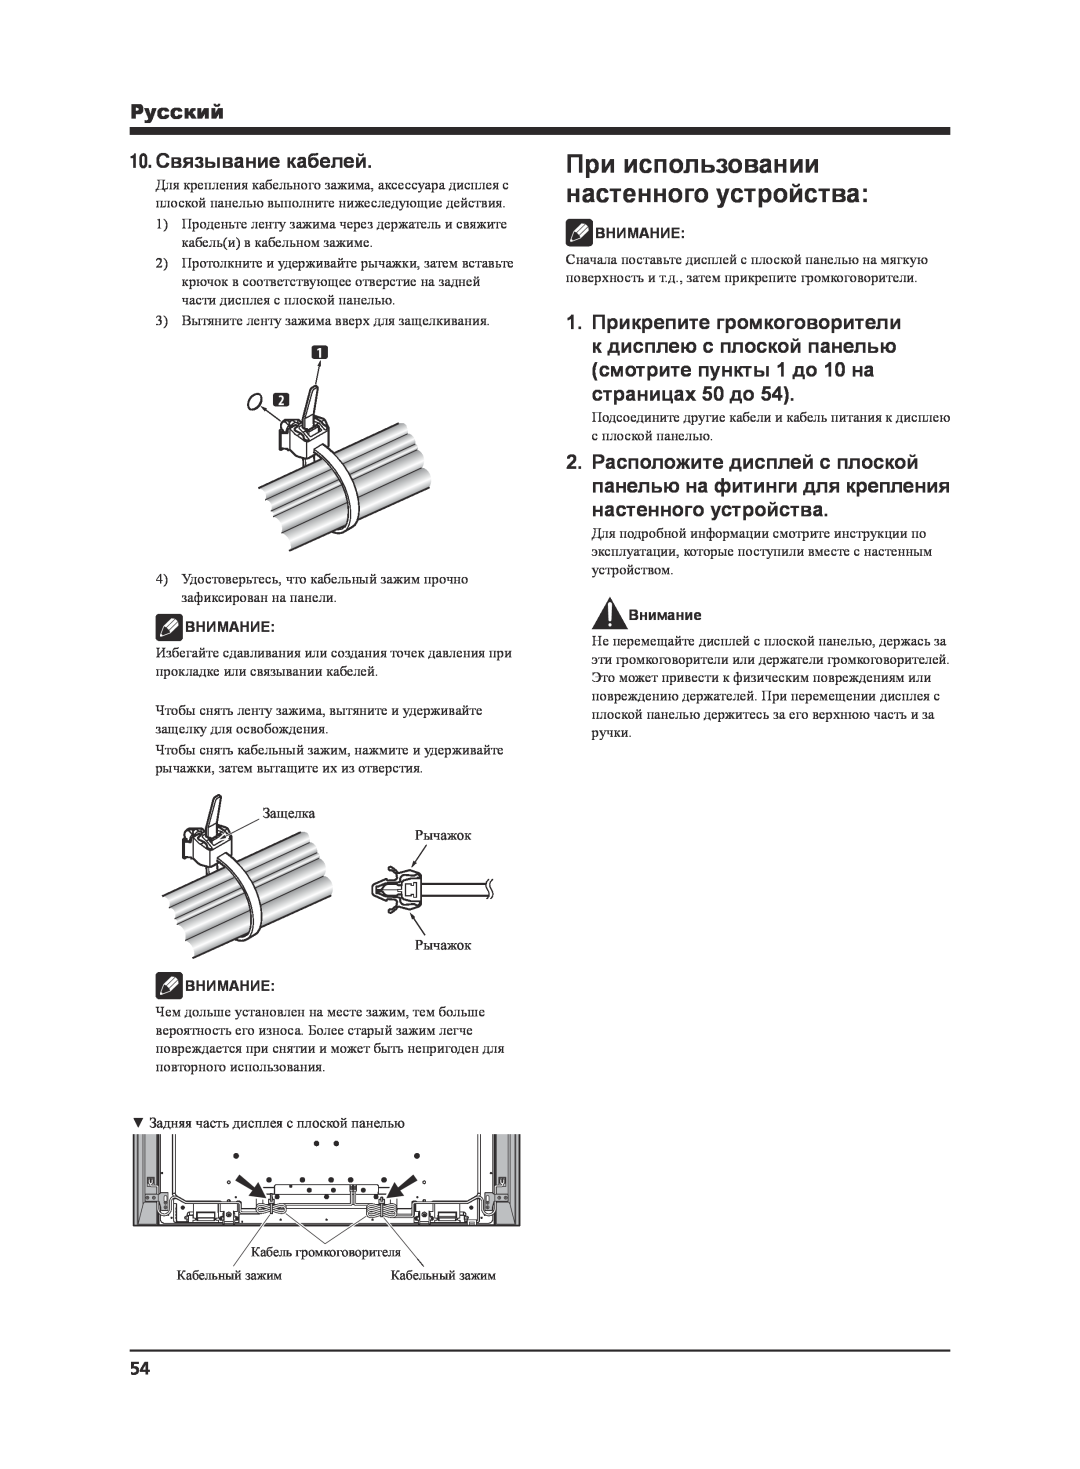 Pioneer KRP-S02 manual 10.Связывание кабелей, страницах 50 до, При использовании настенного устройства, Pyccкий, Внимание 